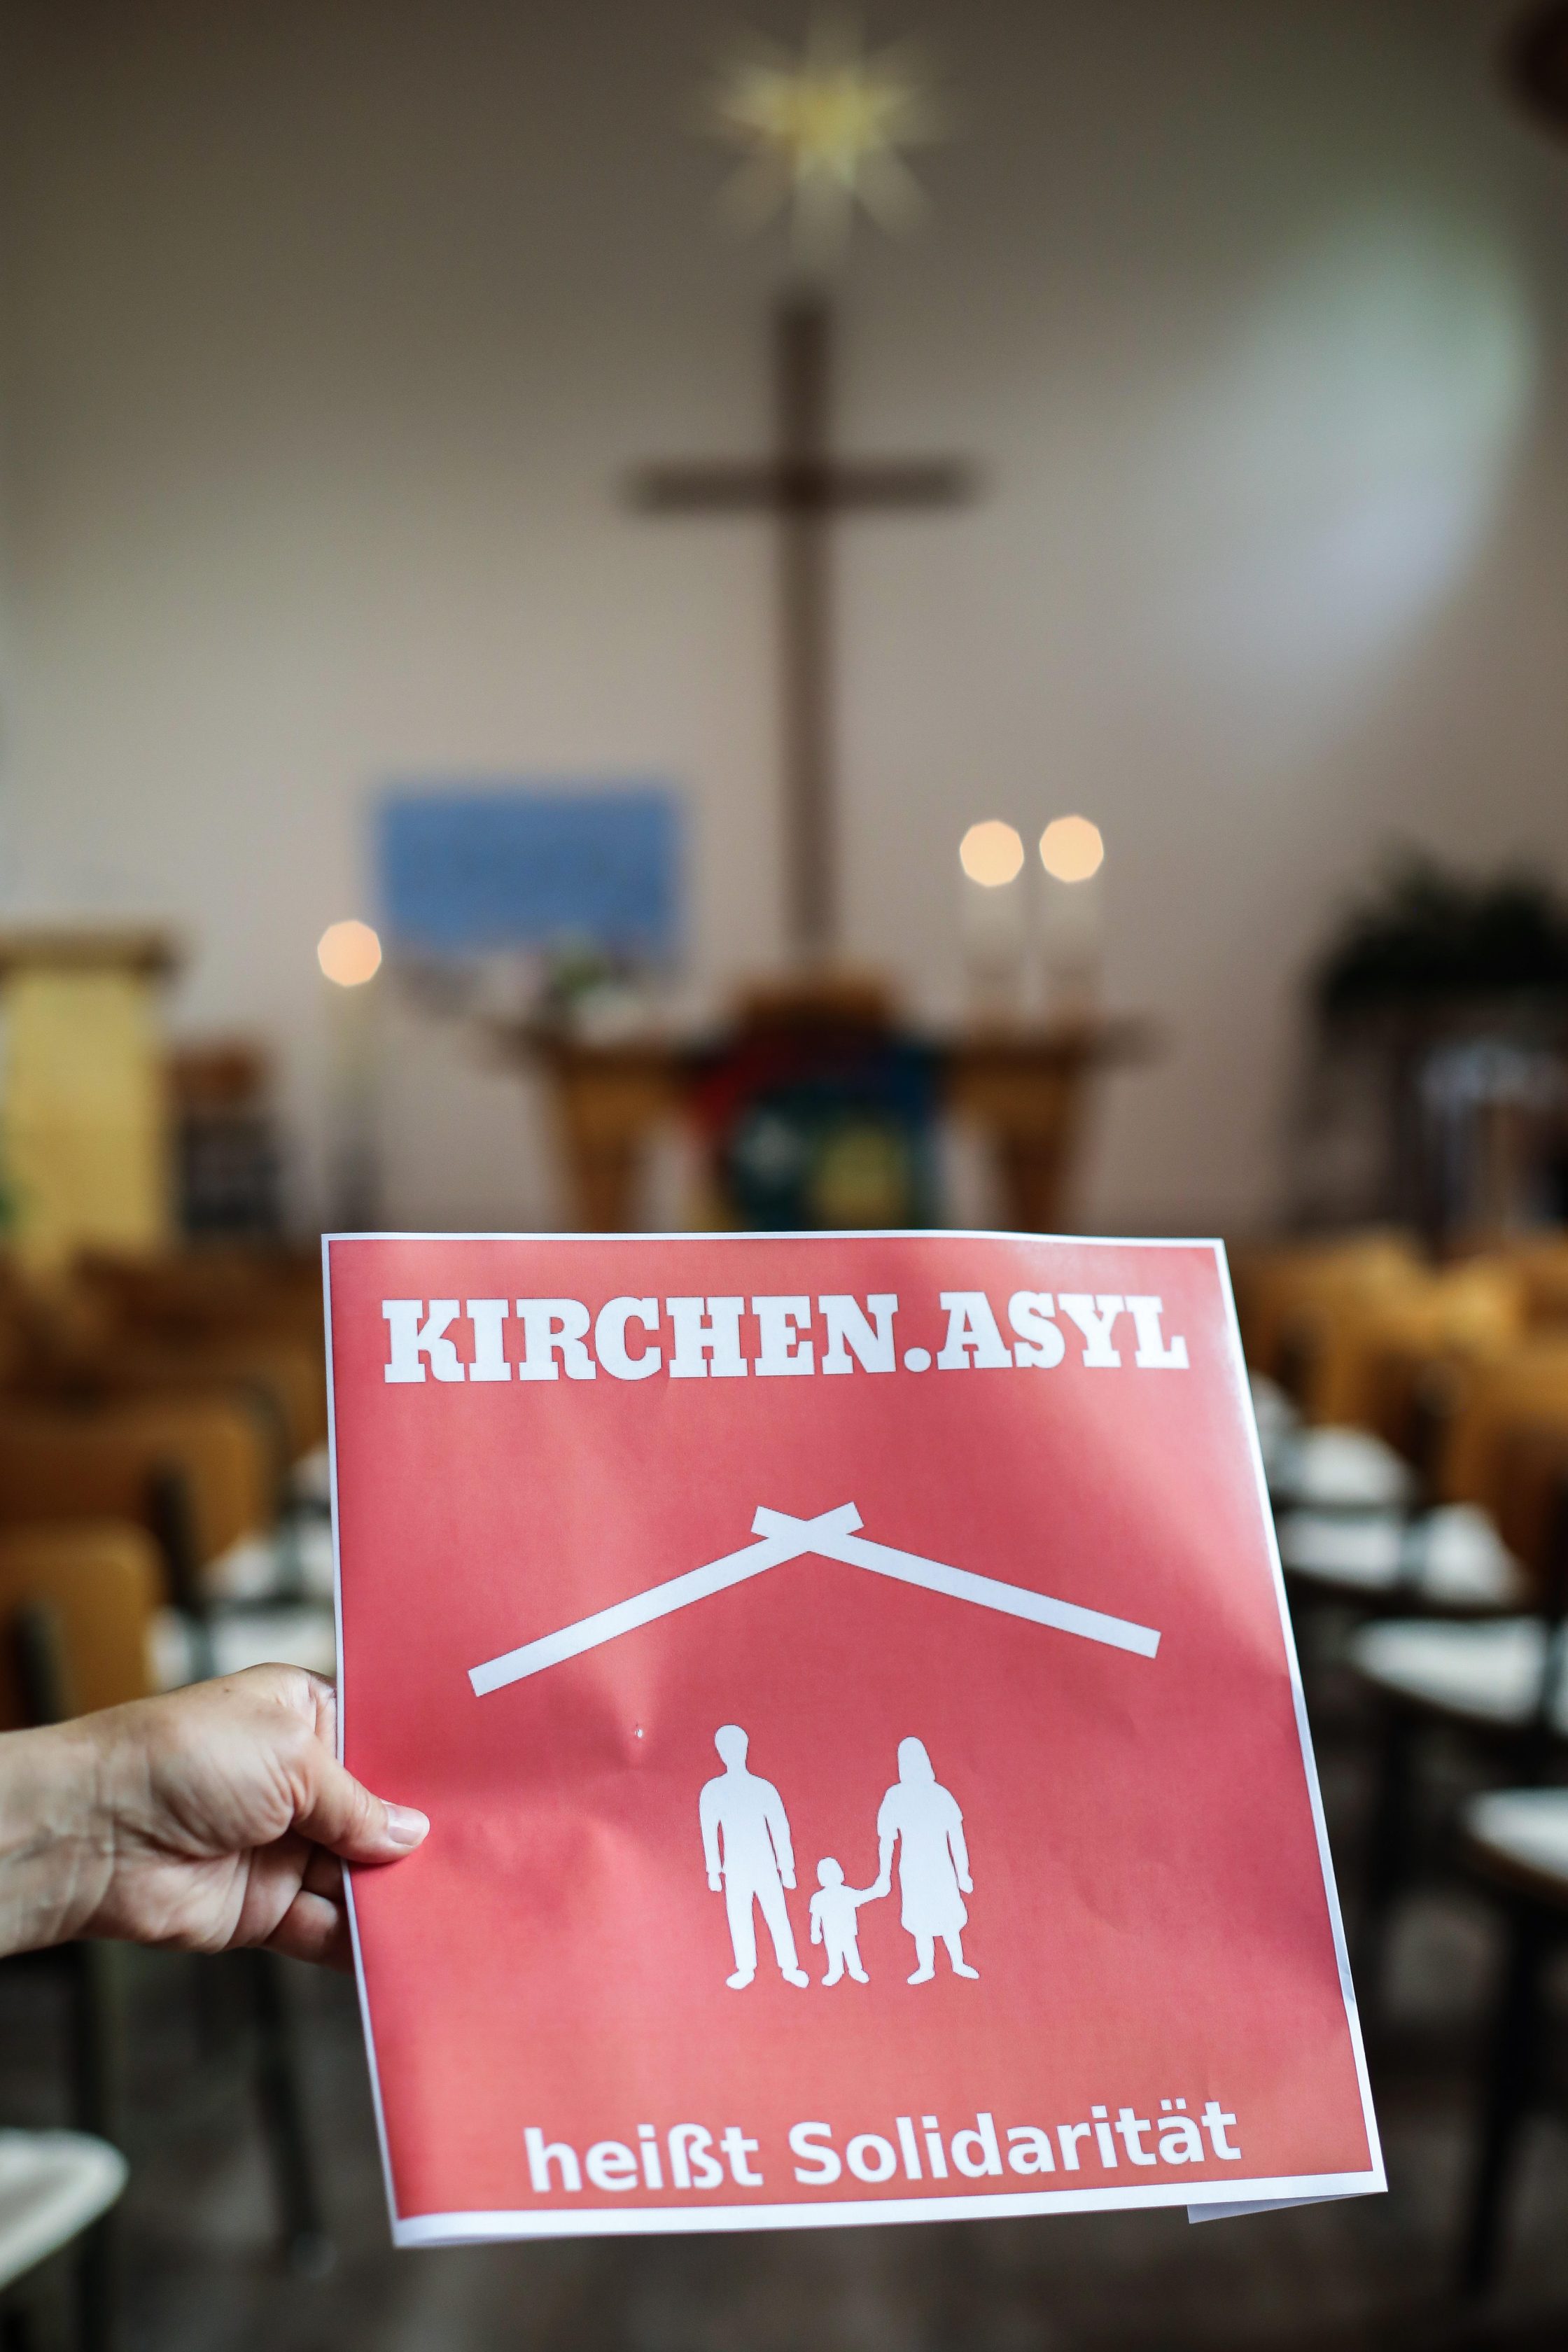 Bundesweite Bedrohung der Kirchenasylpraxis: Gewaltsamer Kirchenasyl-Bruch in Schwerin